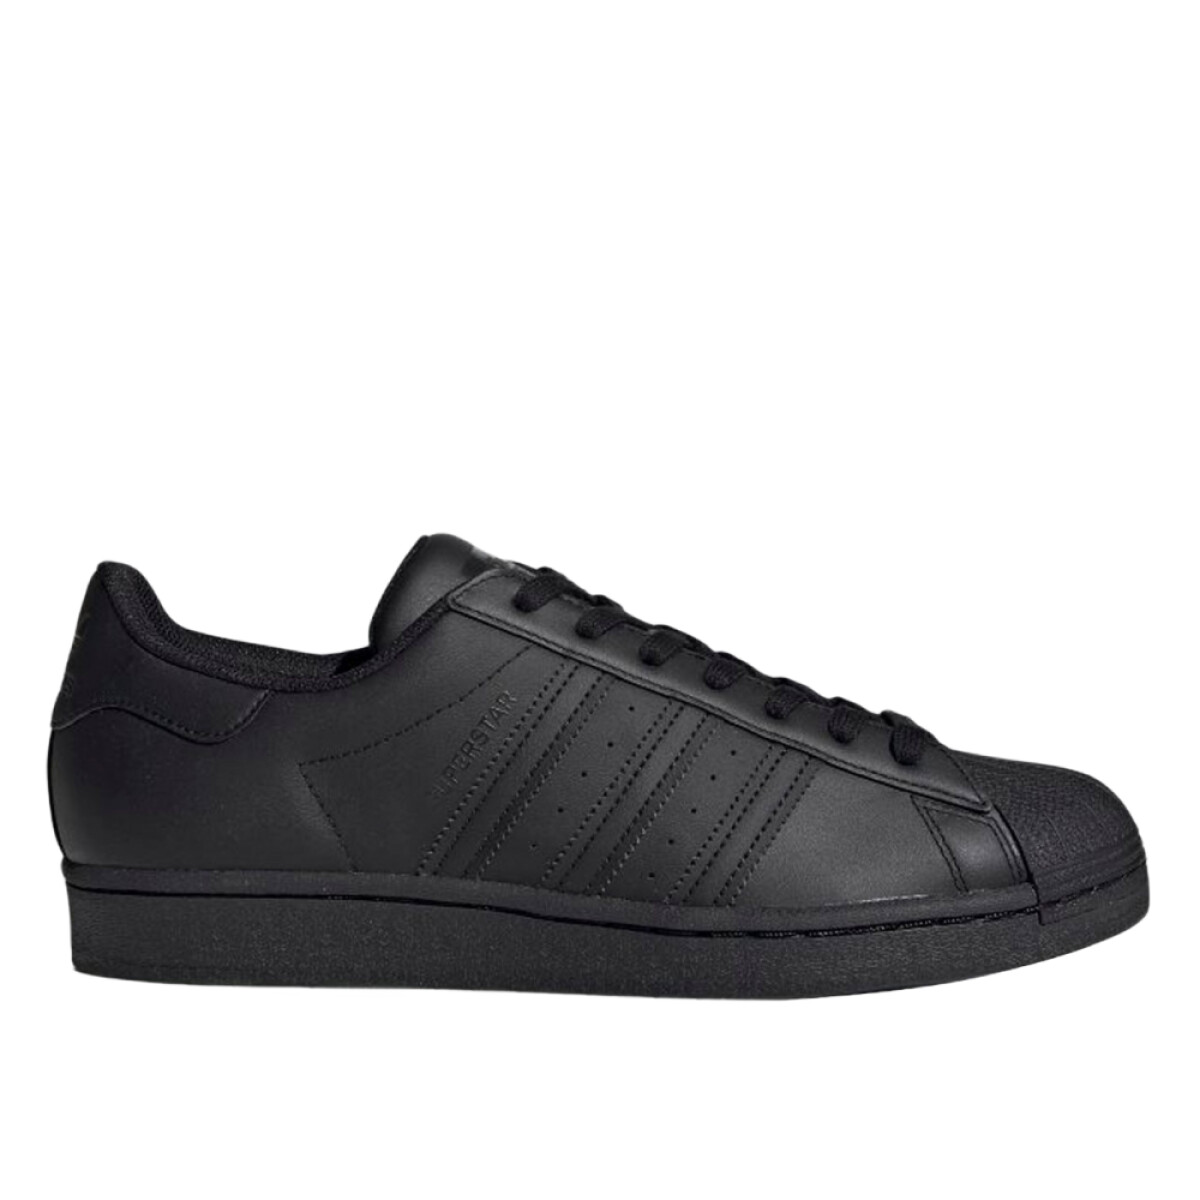 Championes Adidas Superstar - All black 